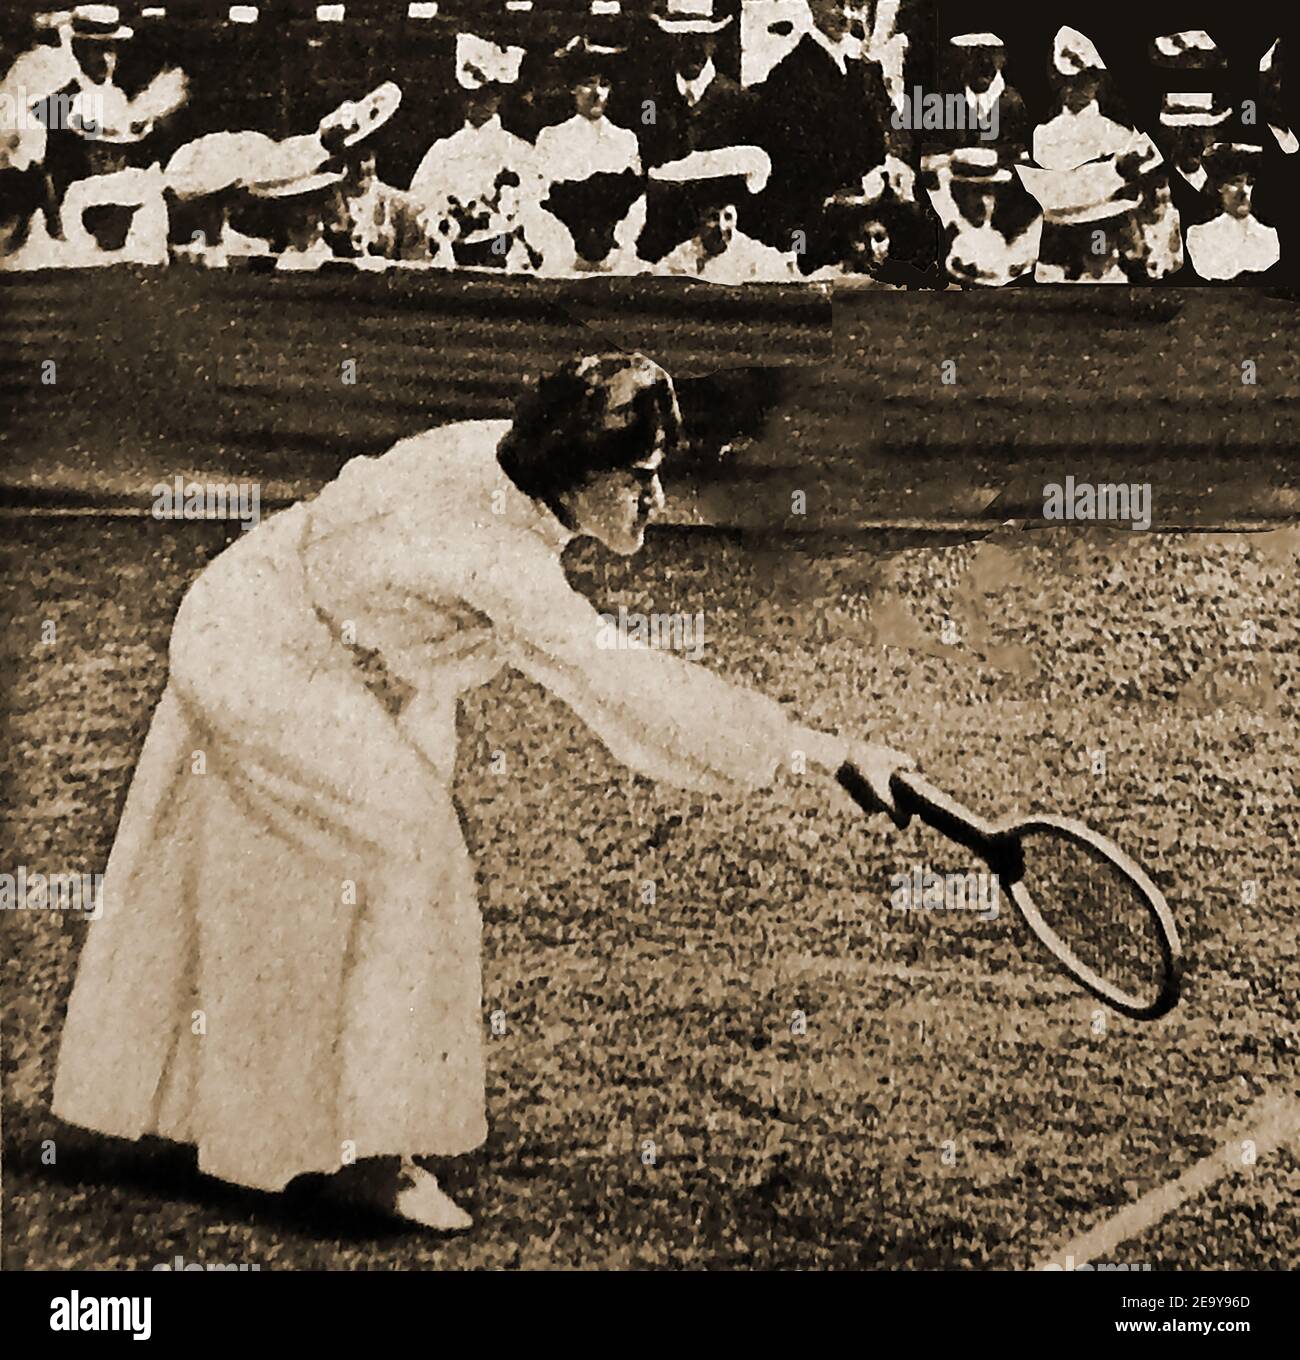 1908 - UNE photo de presse de l'époque montrant 'Mrs Lambert Chambers;, Champion tennis Player à Wimbledon. --- Dorothea Lambert Chambers (née Dorothea Katherine Douglass, 1878 – 1960) est une joueuse de tennis britannique qui a remporté 7 titres de singles pour femmes de Wimbledon et une médaille d'or aux Jeux olympiques d'été de 1908. Elle était l'auteur de 'tennis for Ladies'. Elle a entrepris des travaux volontaires pendant la première Guerre mondiale pendant la première Guerre mondiale, d'abord à l'hôpital Ealing, puis au Little Theatre Banque D'Images